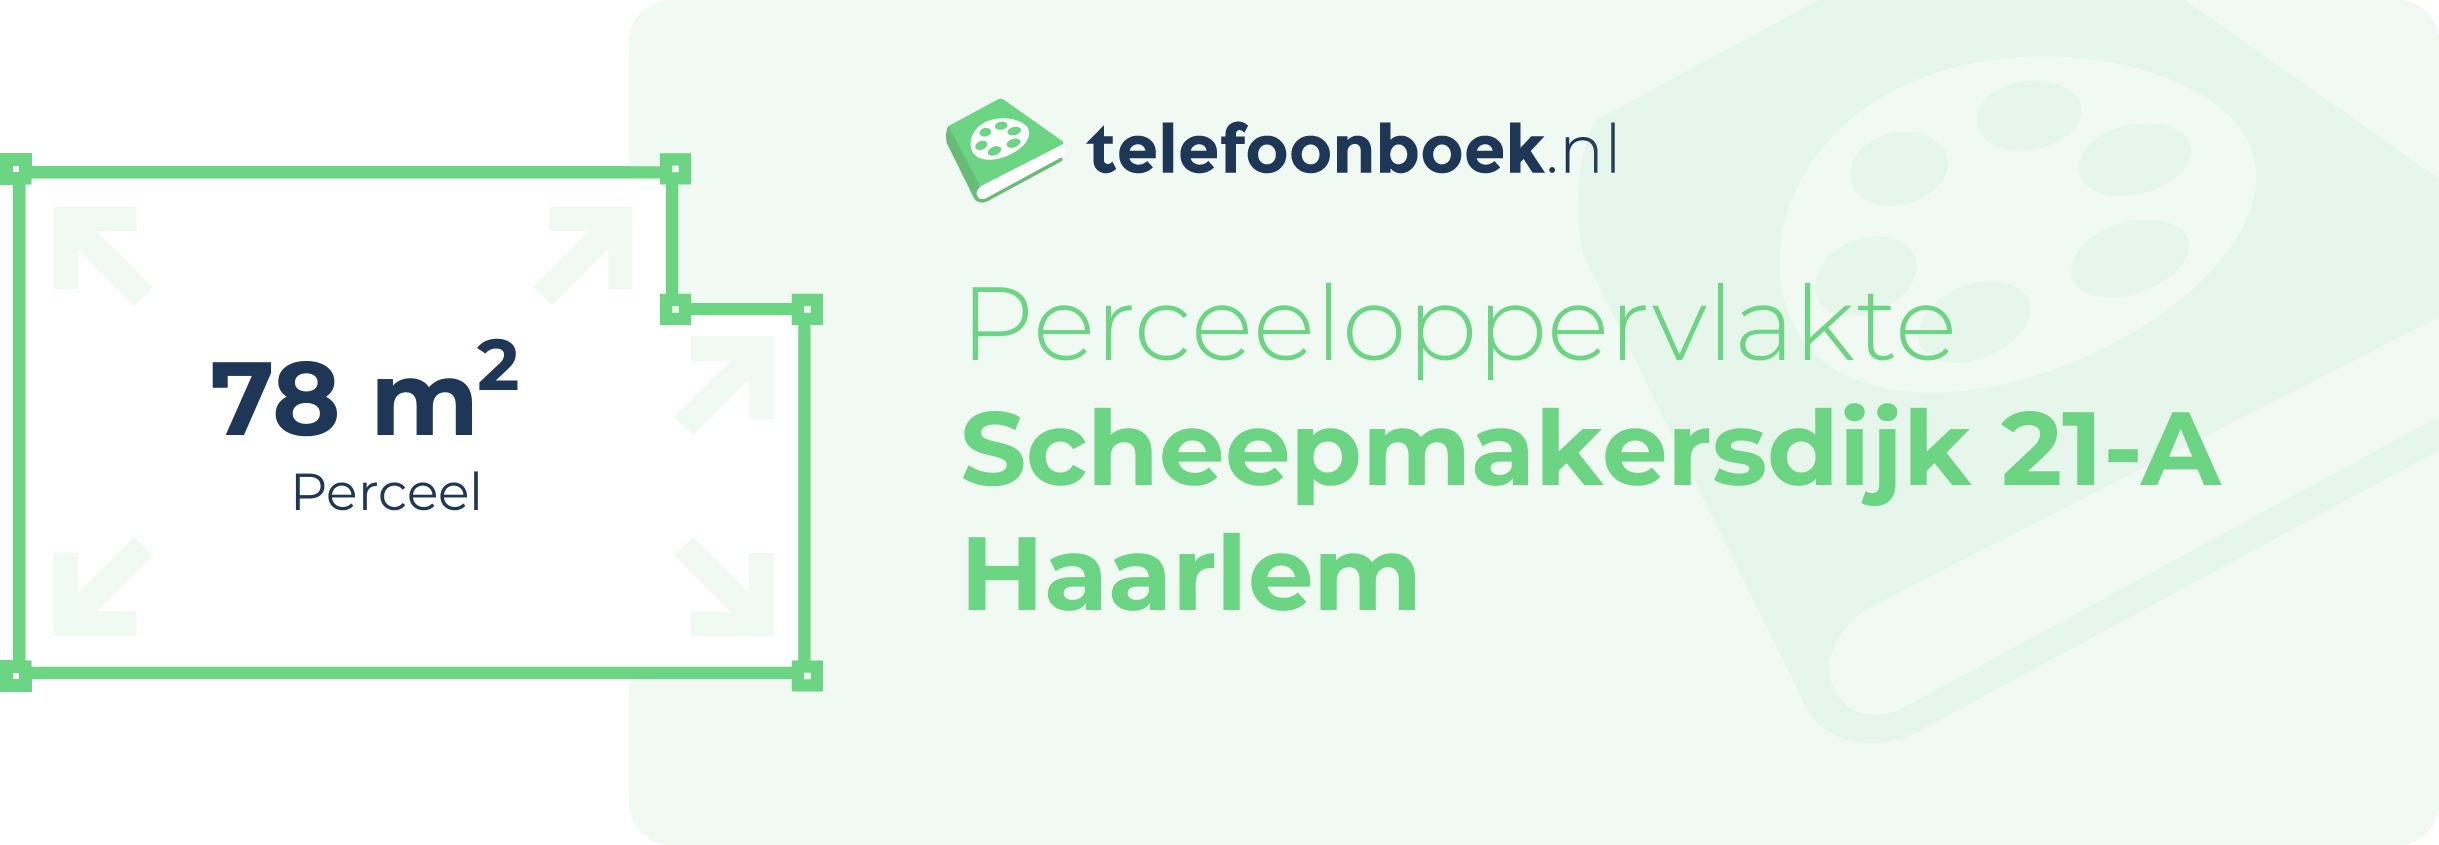 Perceeloppervlakte Scheepmakersdijk 21-A Haarlem